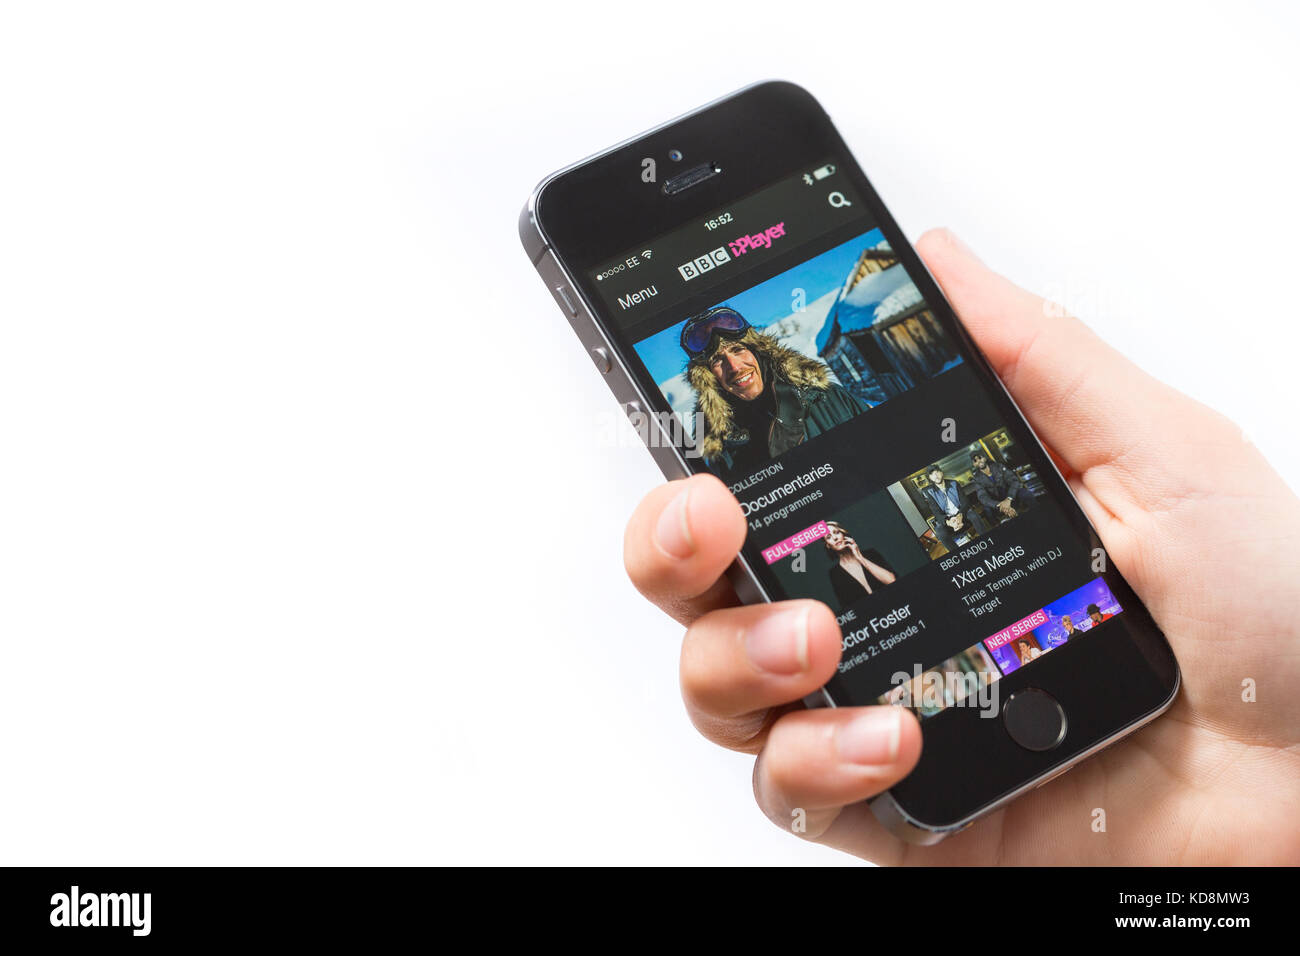 Jeuxvideo app sur un téléphone mobile Banque D'Images